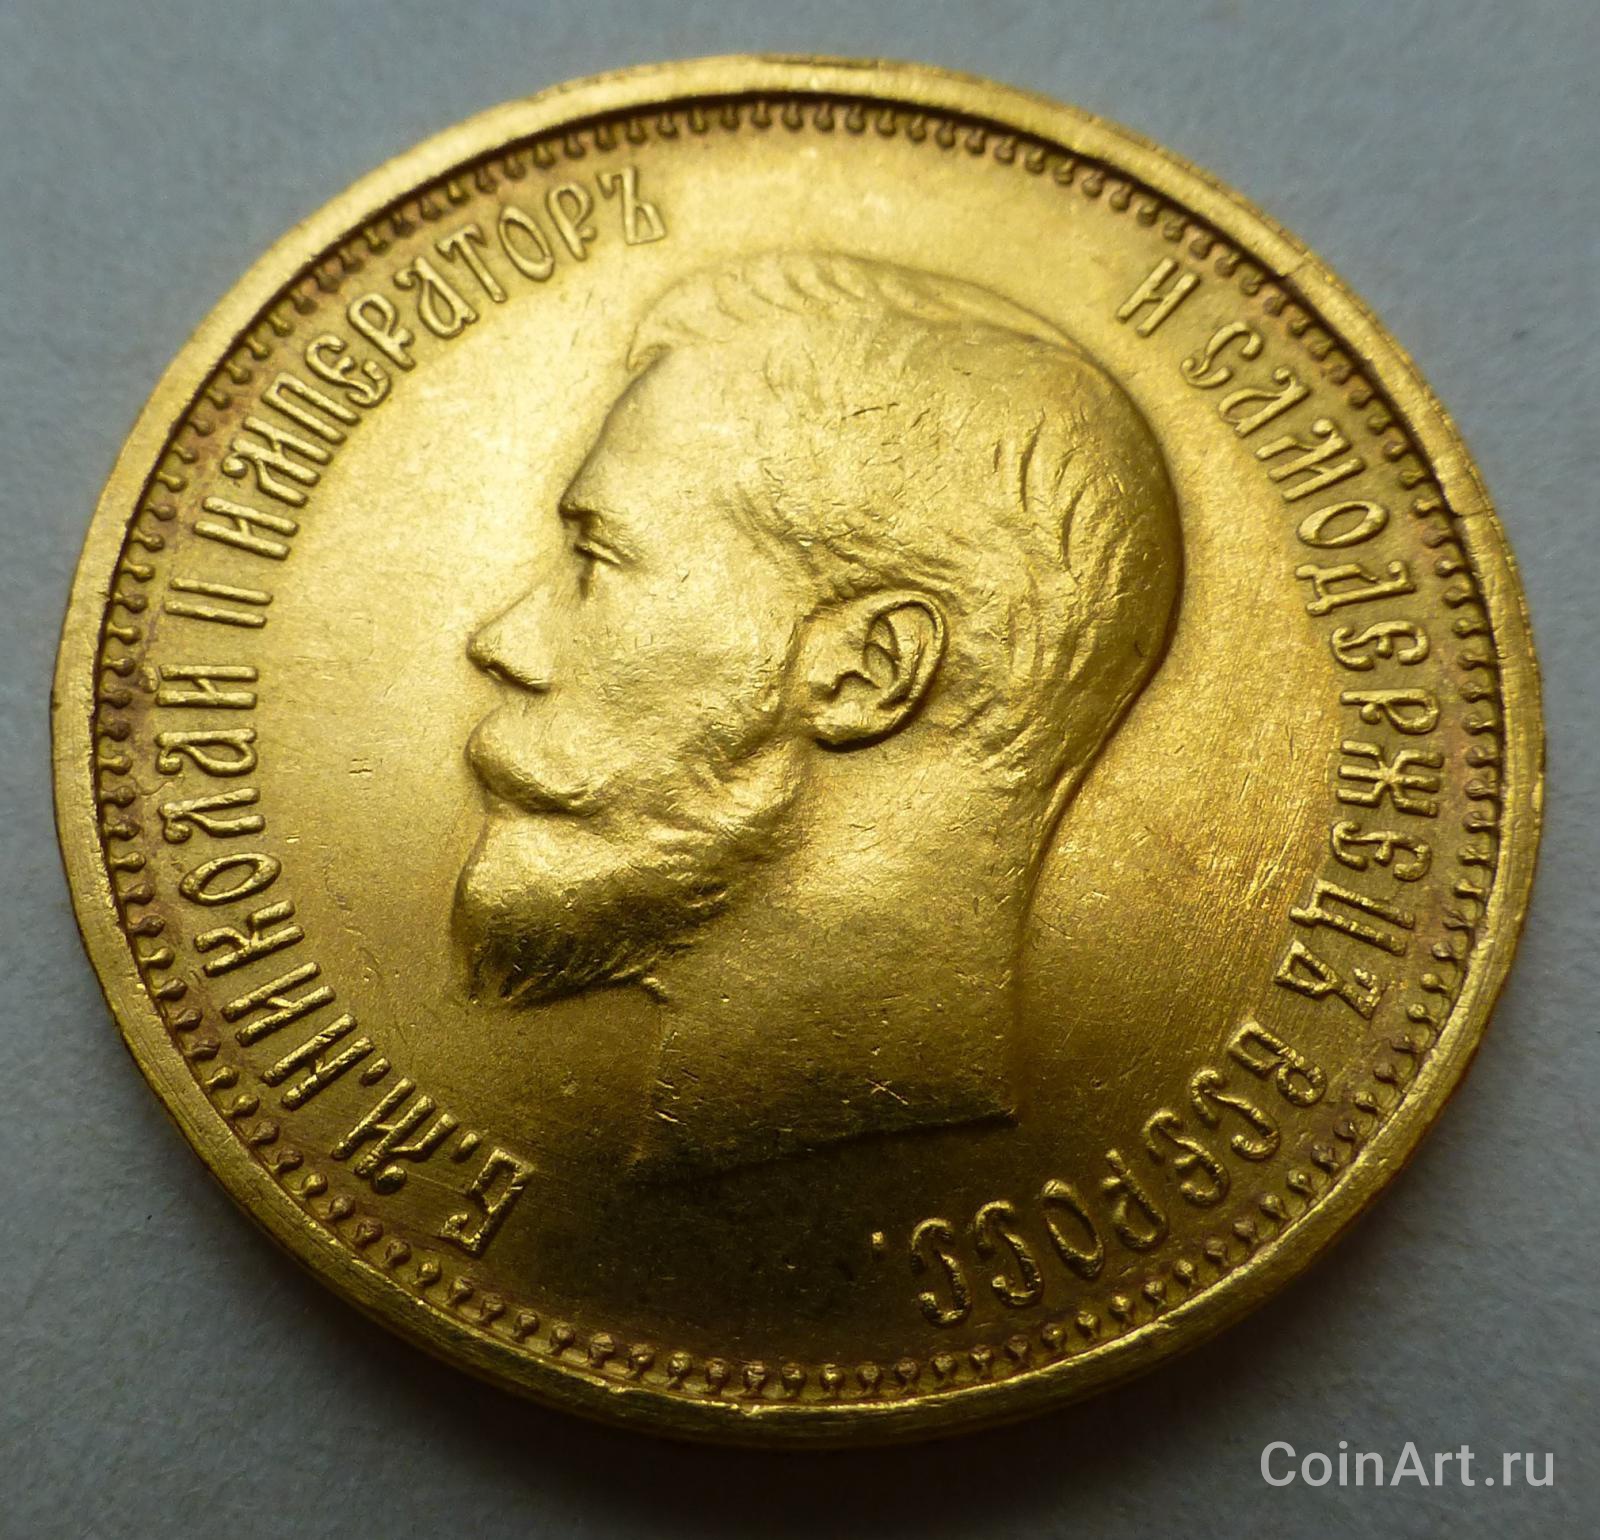 10 рублей золотом 1899 года. Золотой рубль Витте. Купить 10 рублей 1899 года золото цена на сегодня.